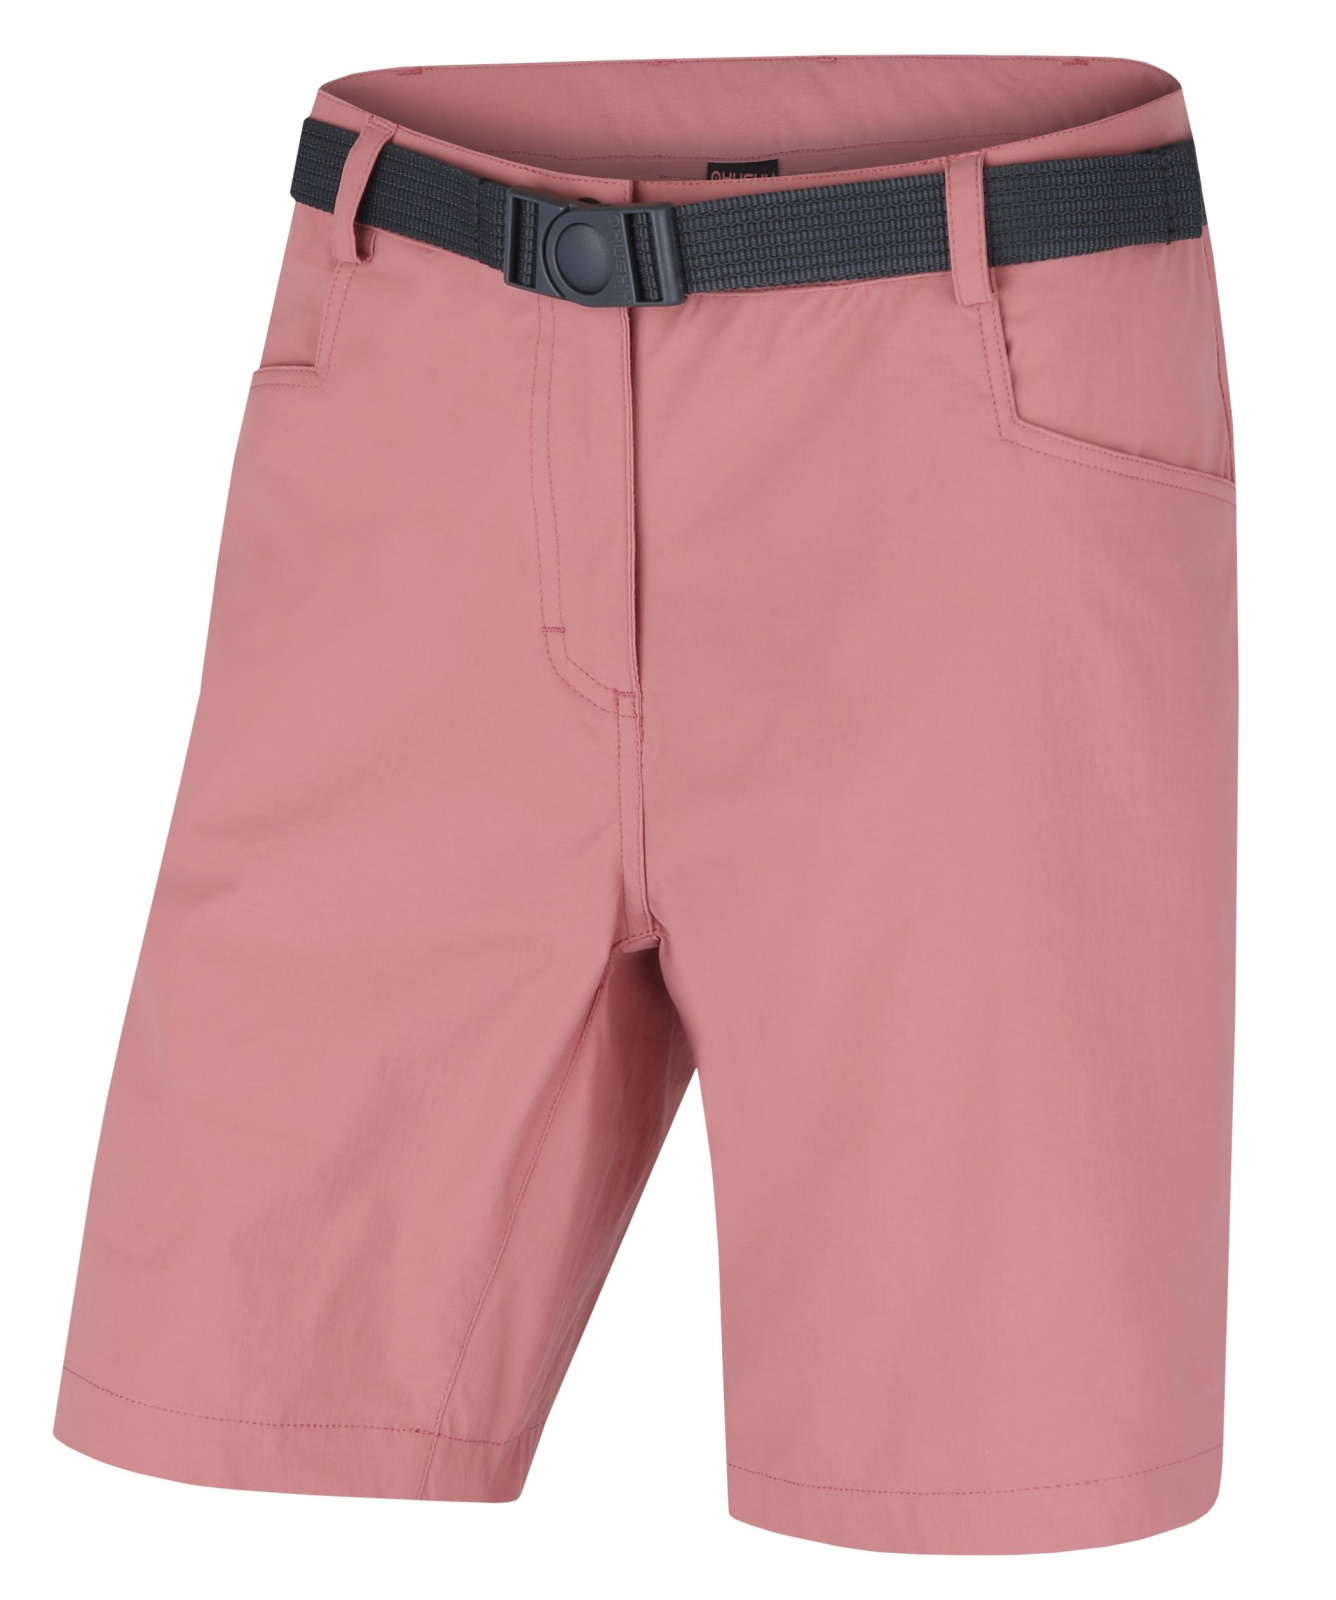 Husky Dámské šortky Kimbi L faded pink Velikost: M dámské šortky